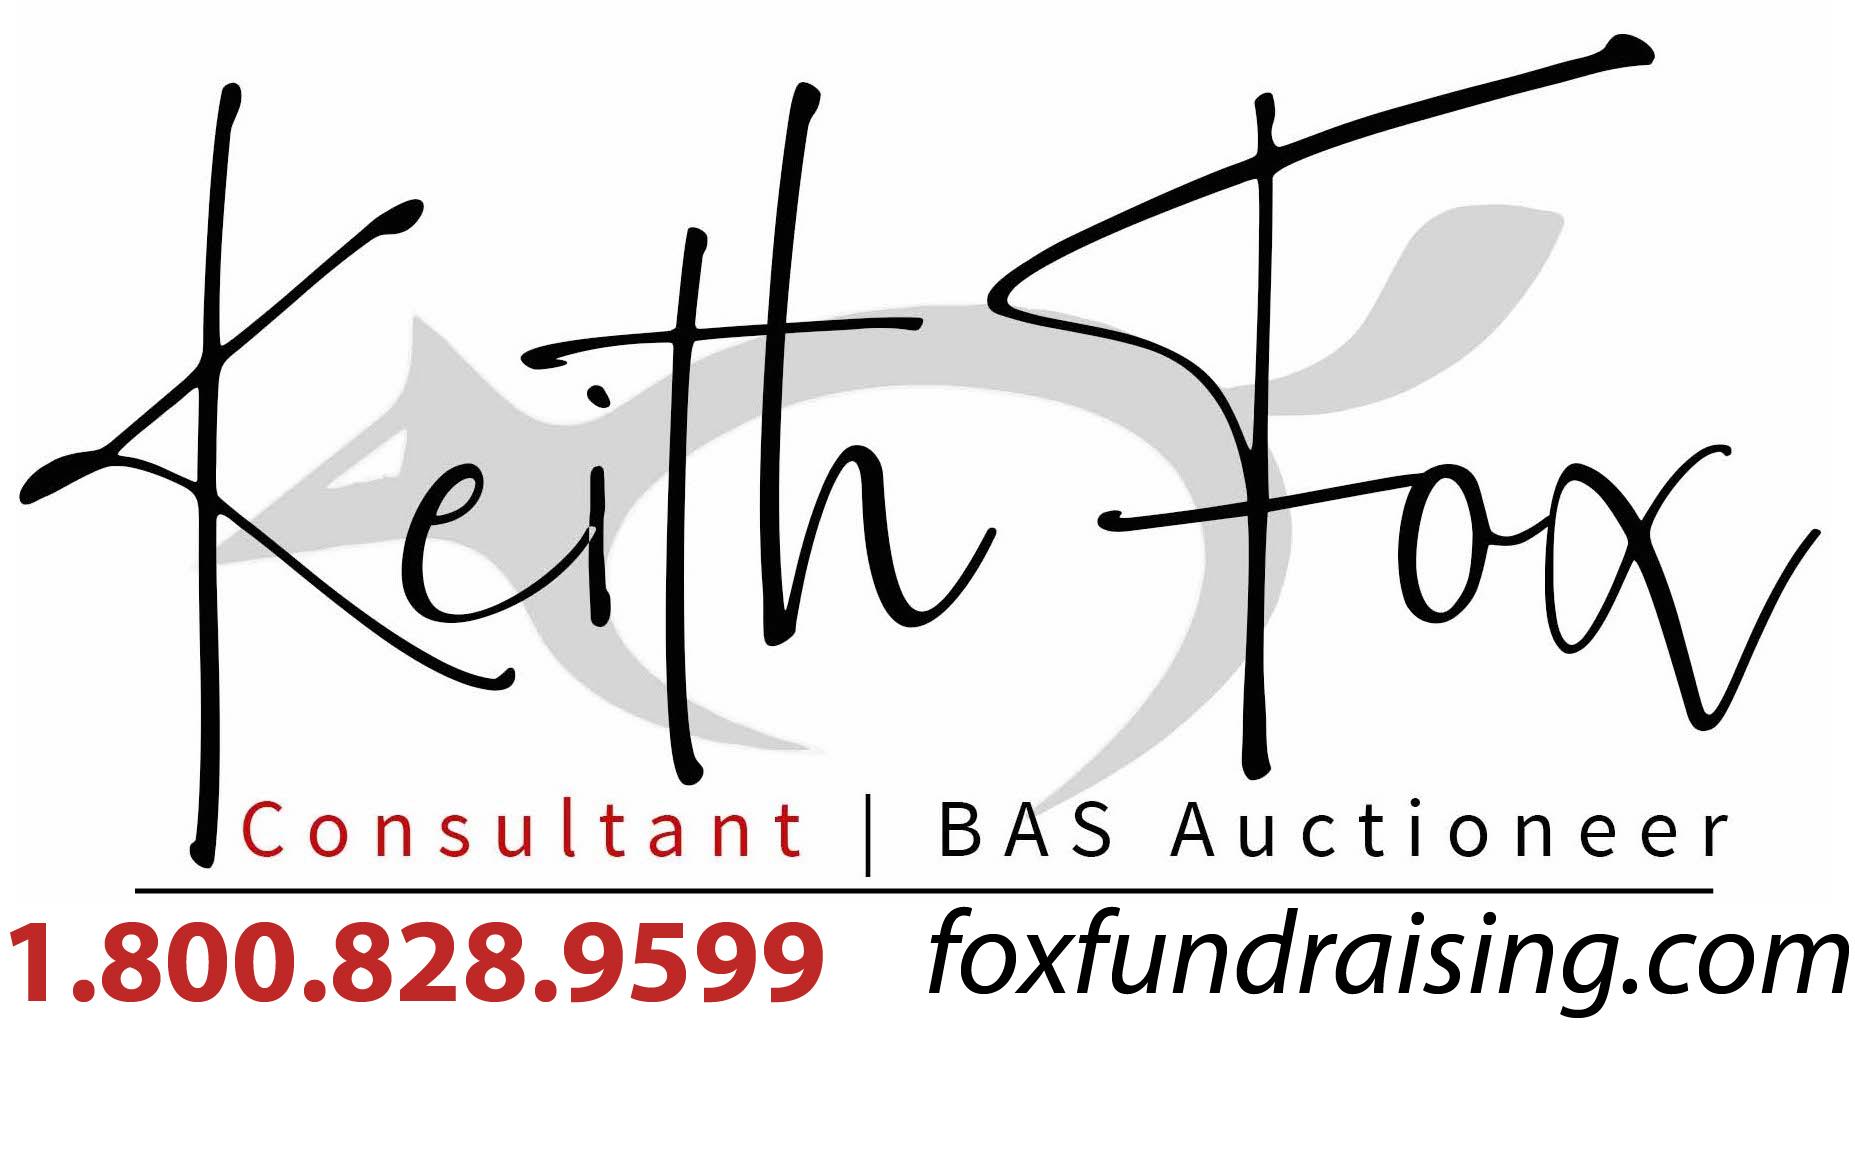 Keith Fox Fundraising